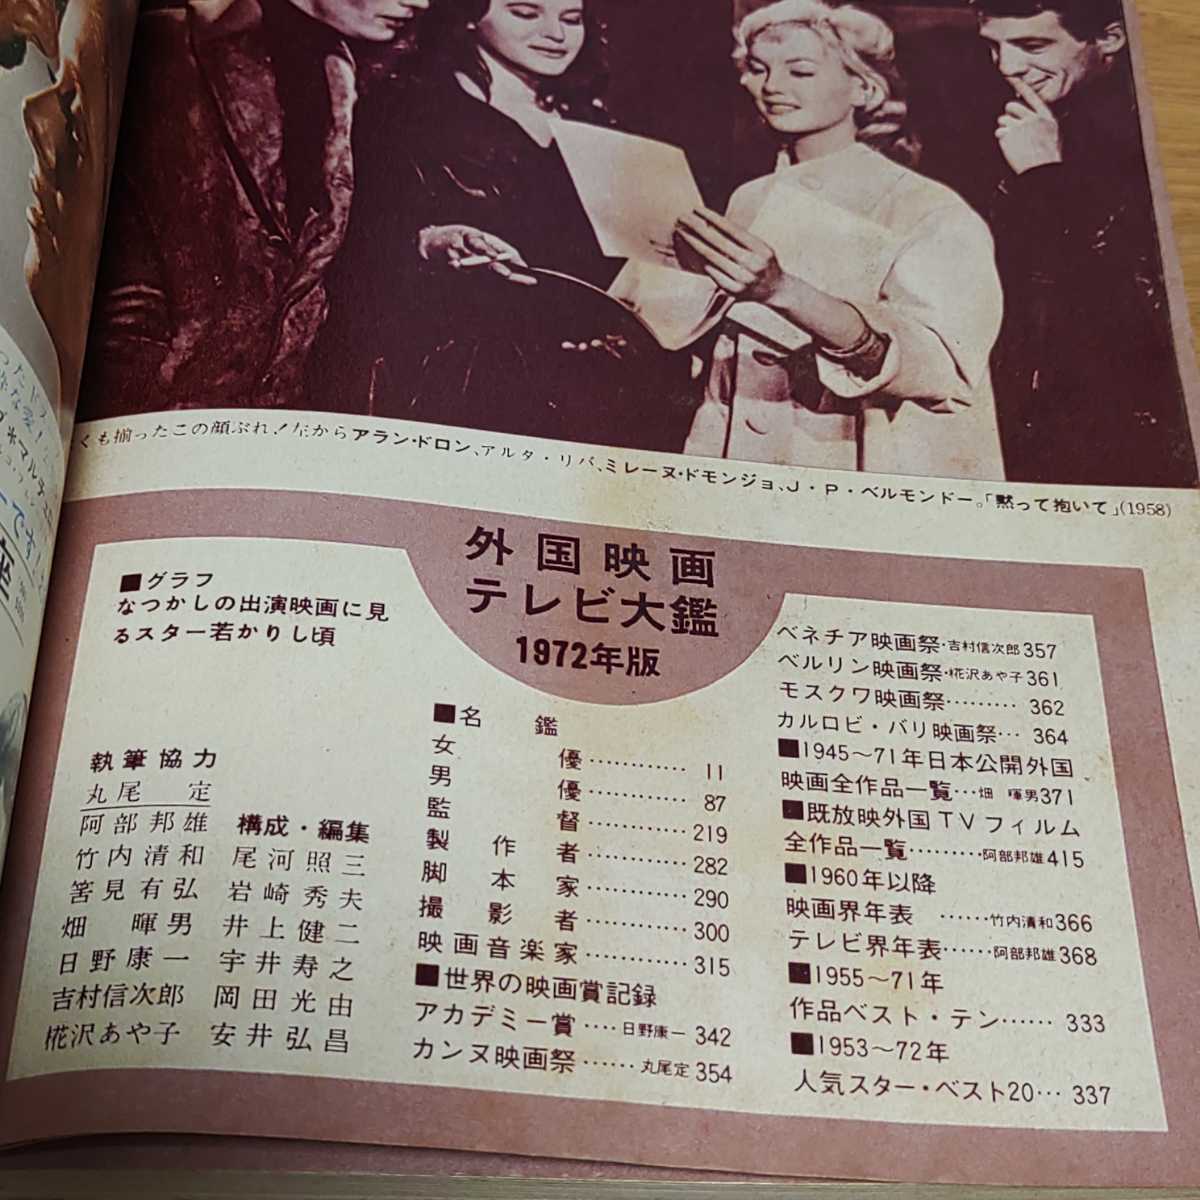 ヤフオク スクリーン 1972年版 外国映画 テレビ大鑑 近代